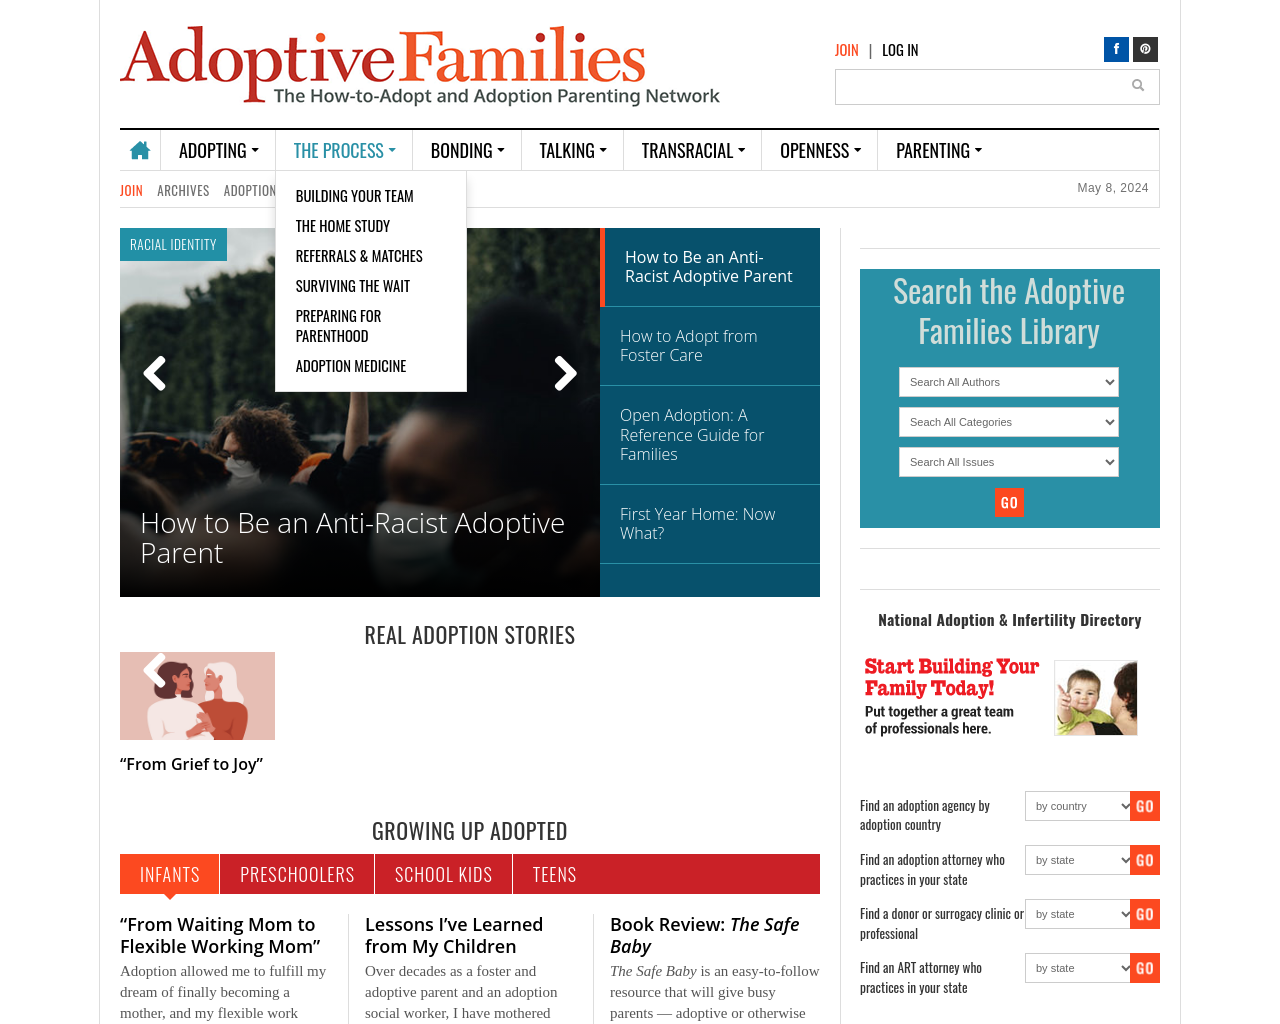 adoptivefamilies.com